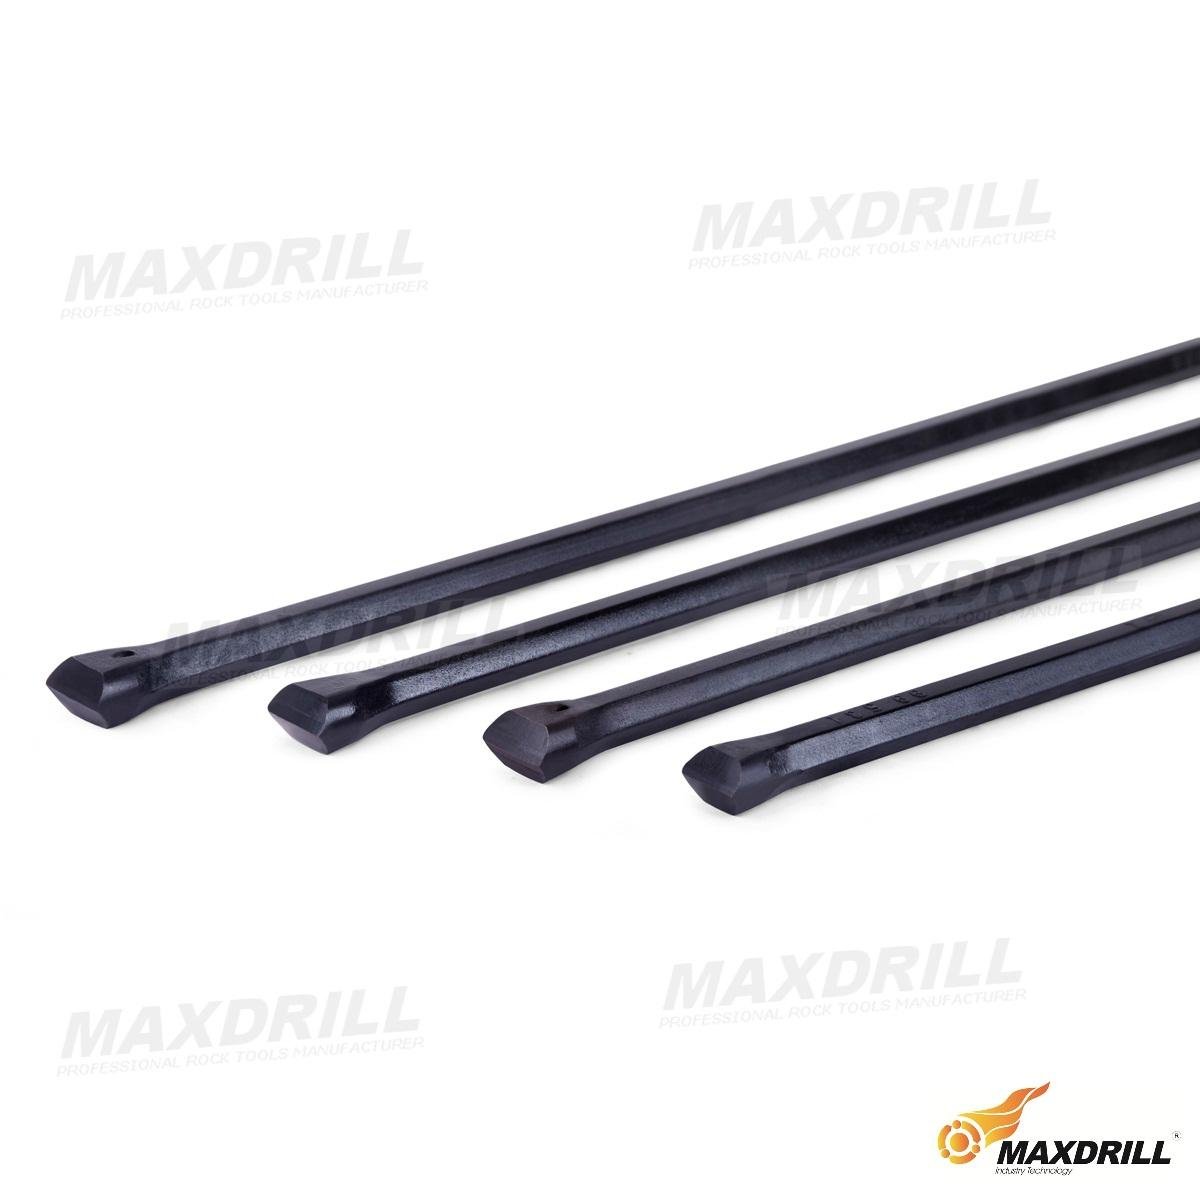 MAXDRILL Integral Drill Steel 5